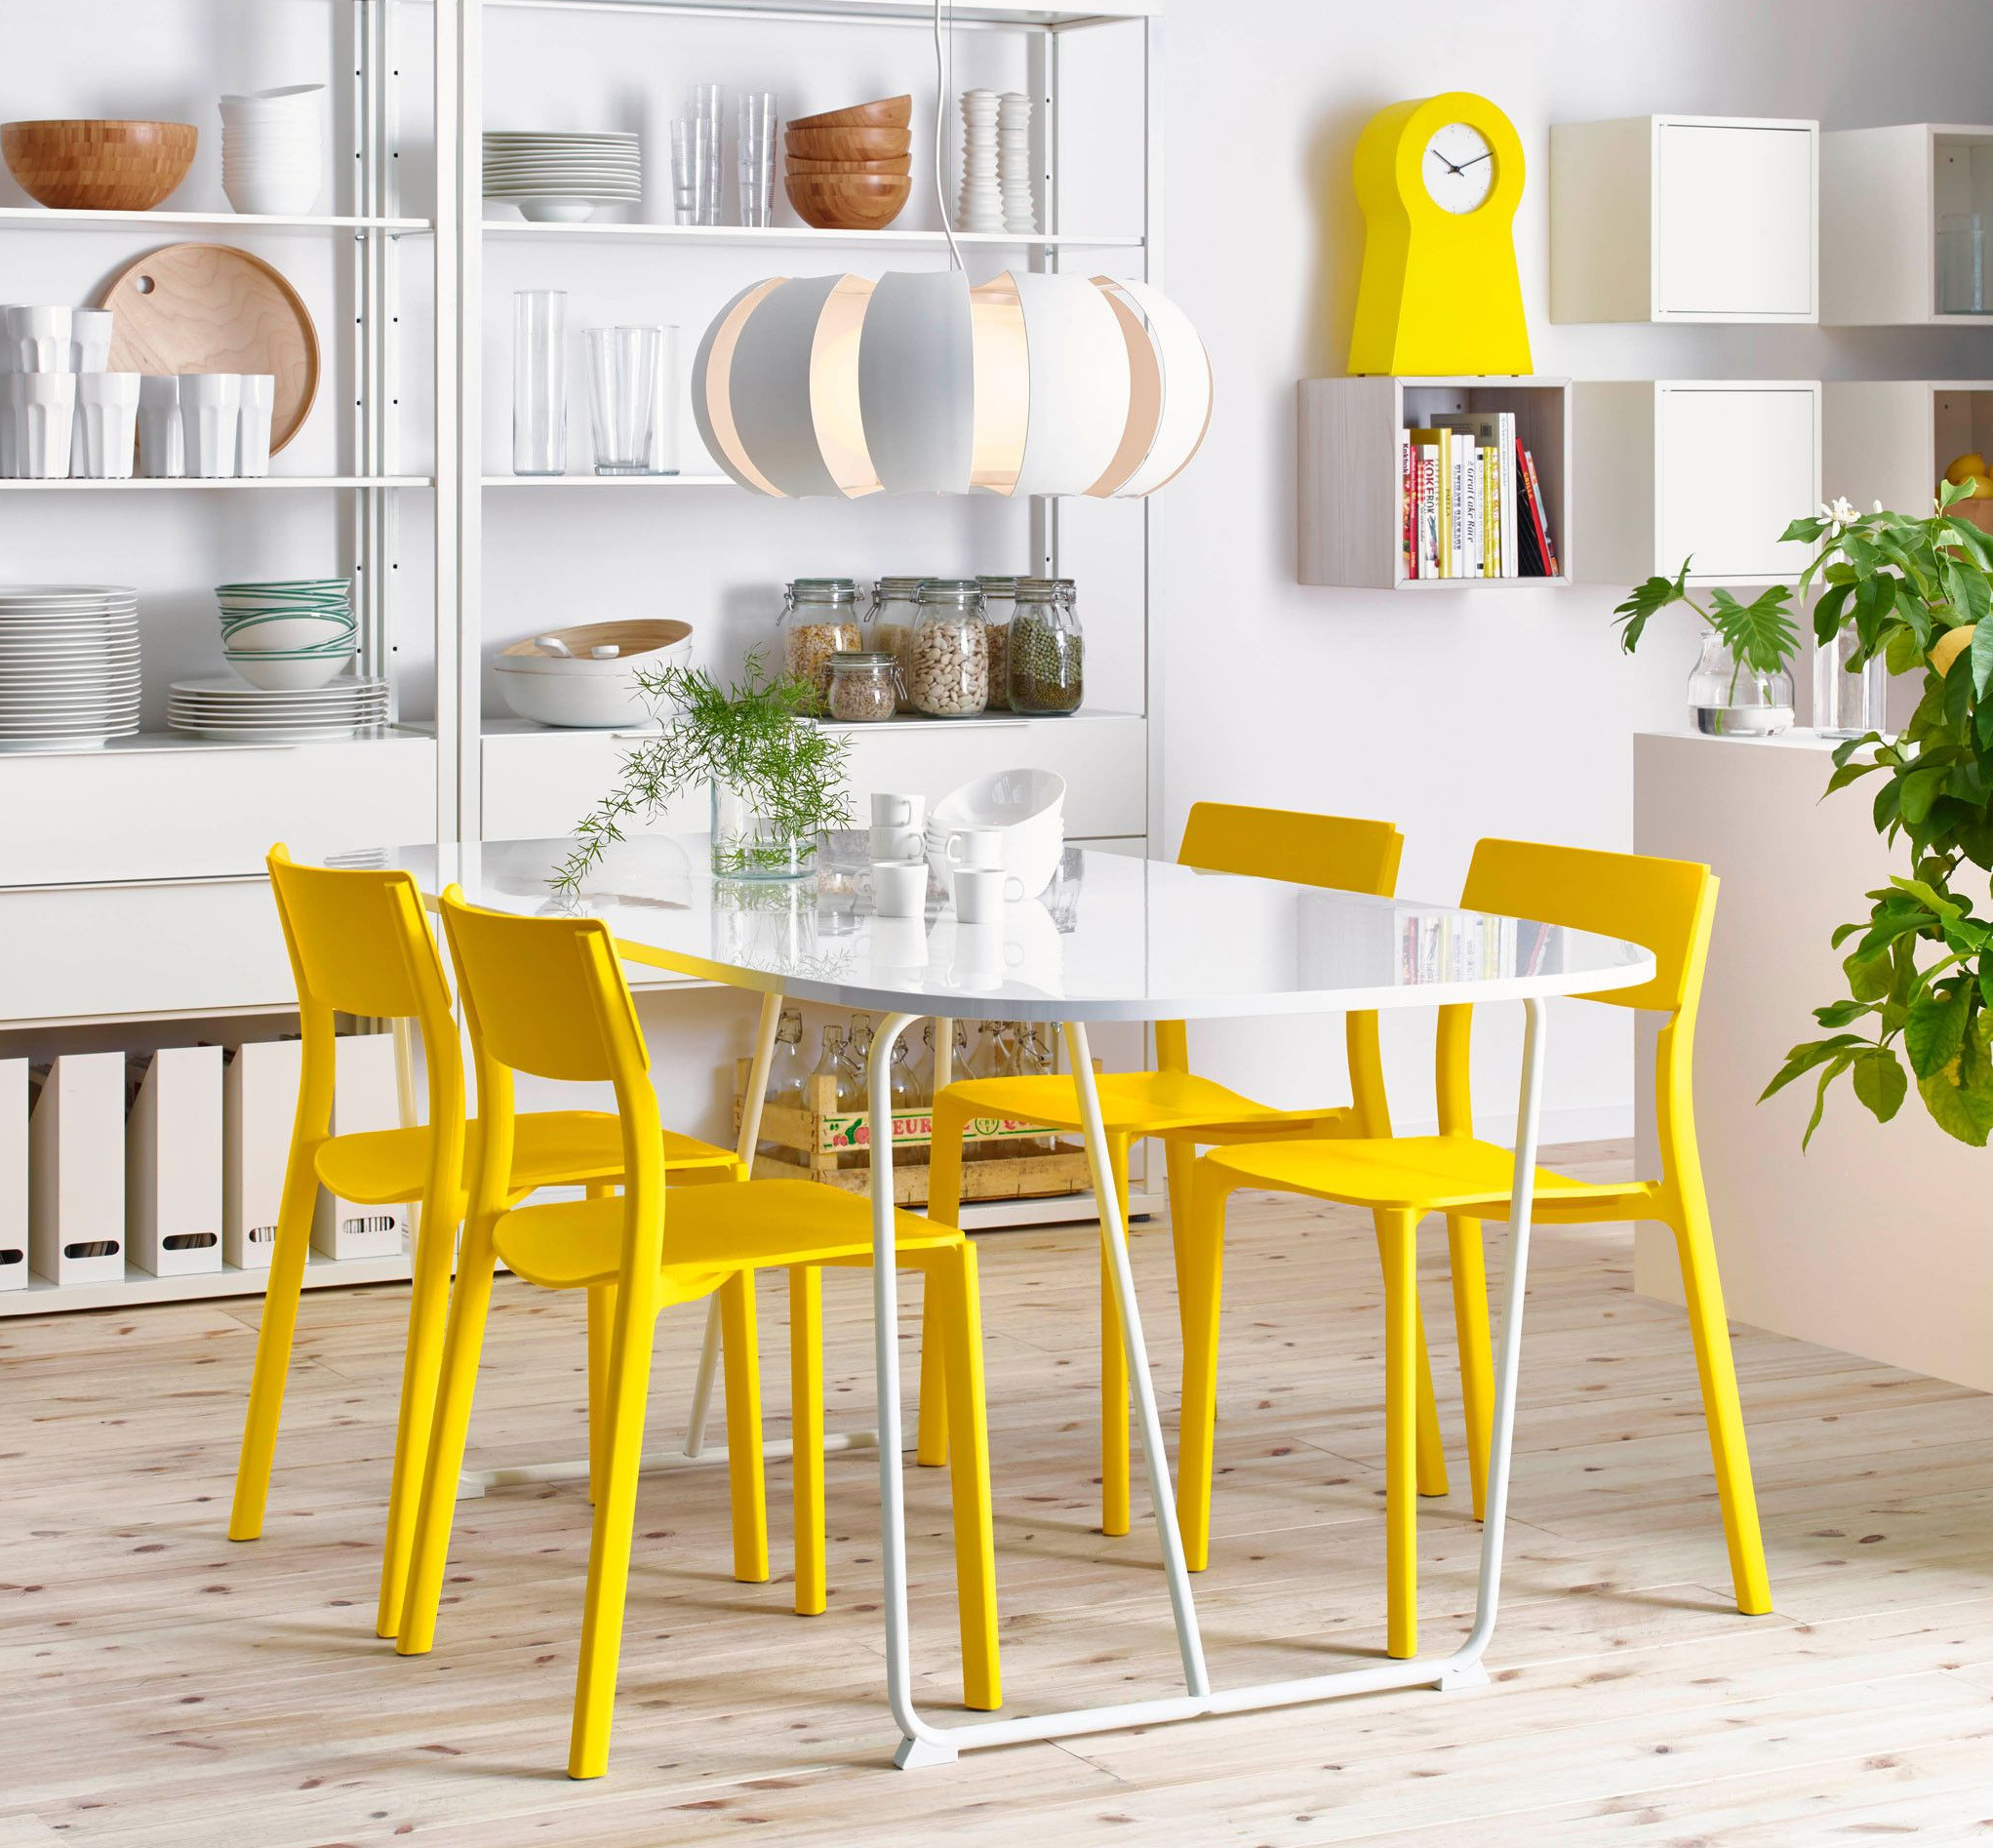 Obdélníkový stůl IKEA z bílého plastu se zaoblenými hranami